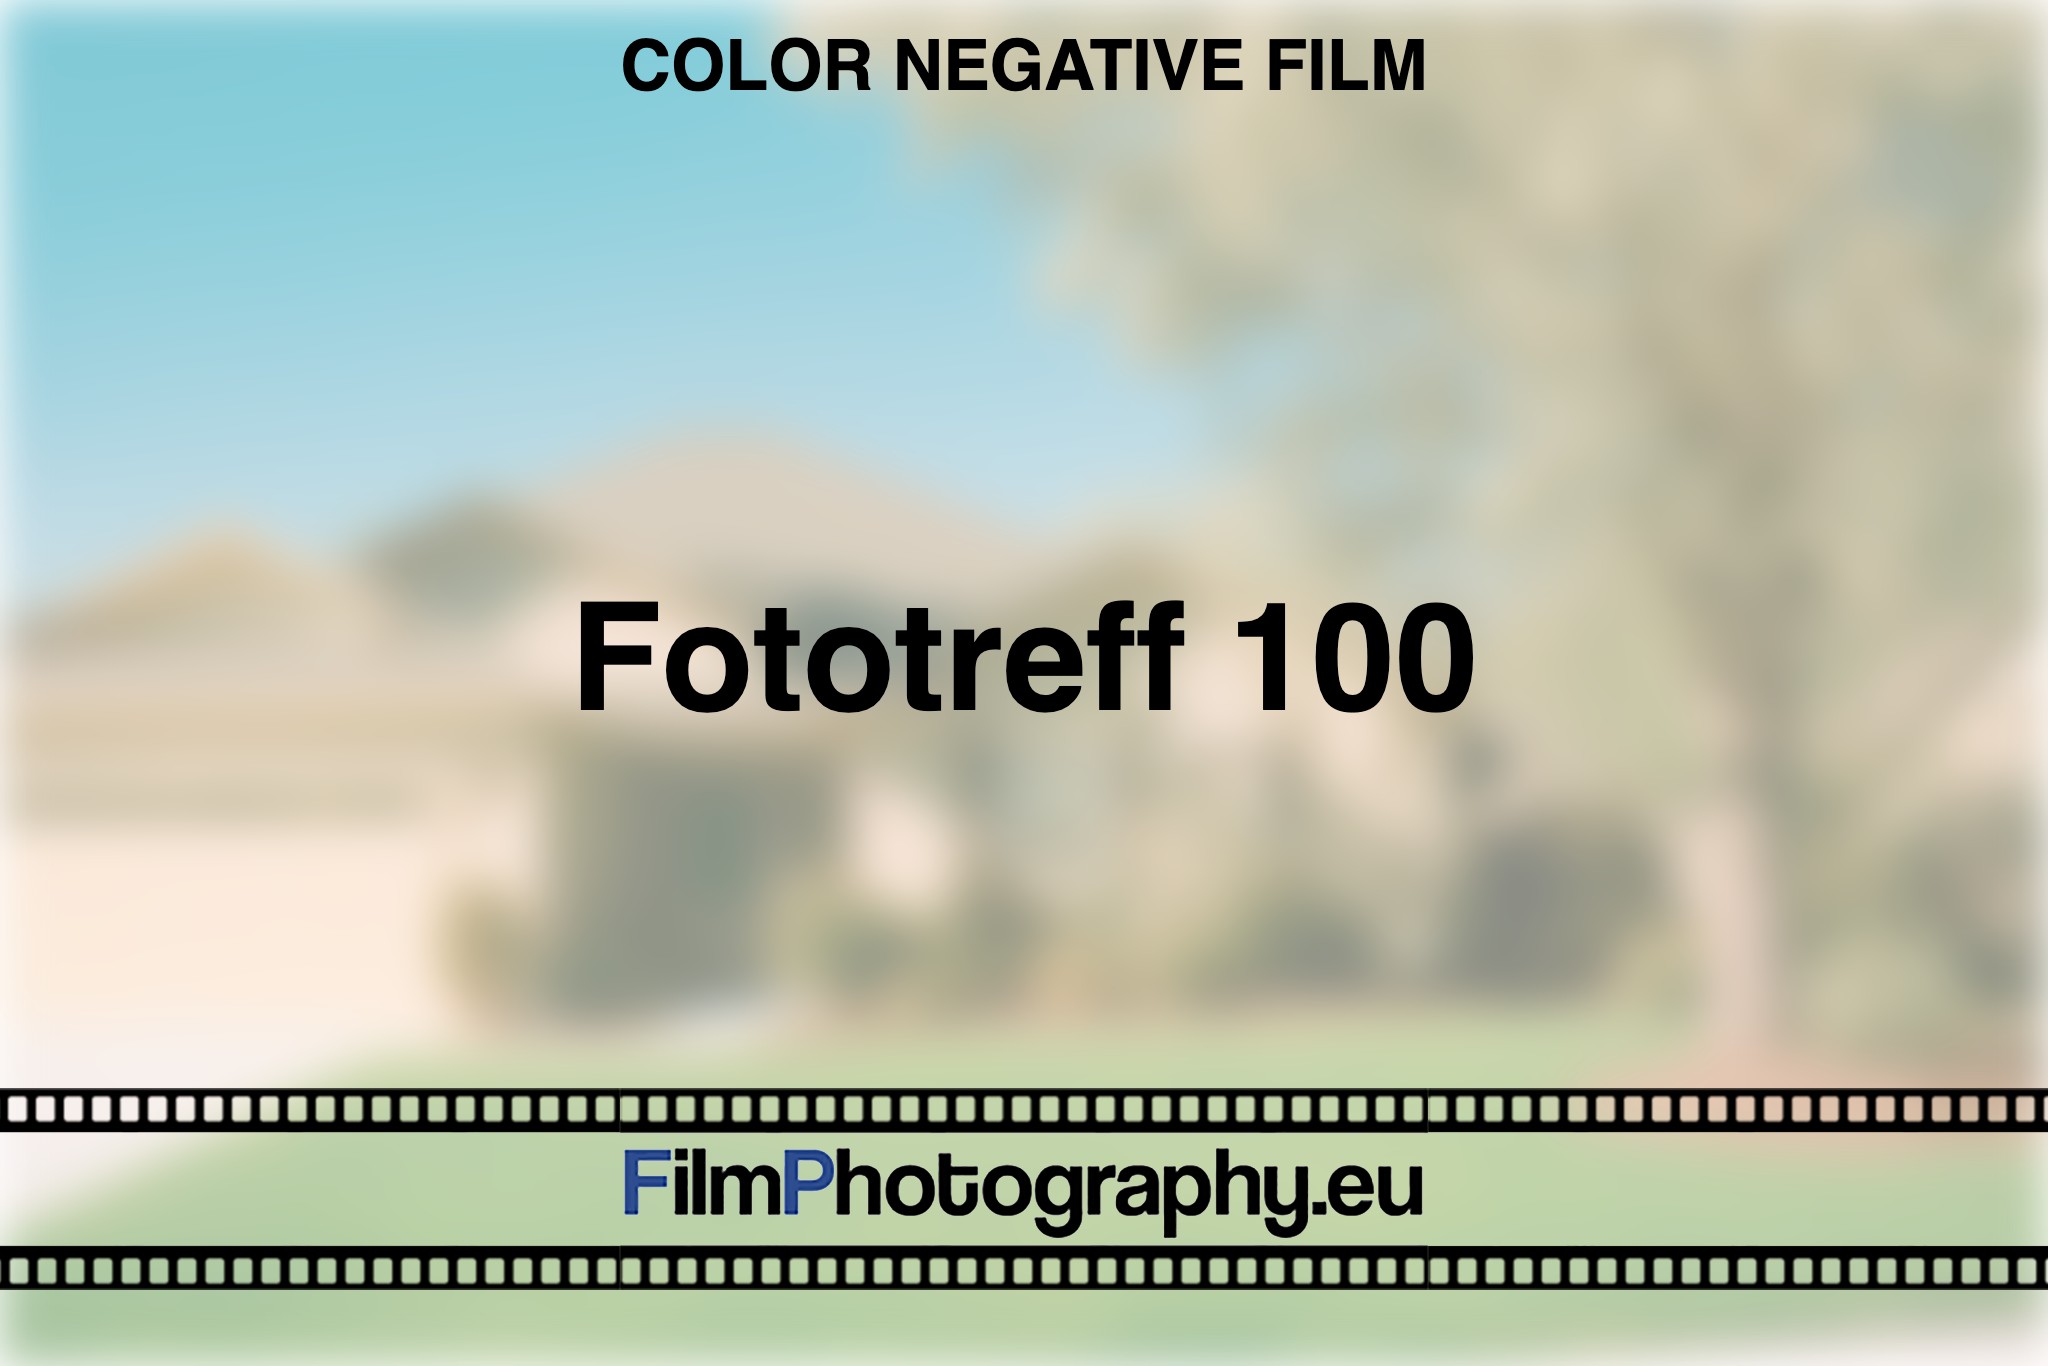 fototreff-100-color-negative-film-bnv